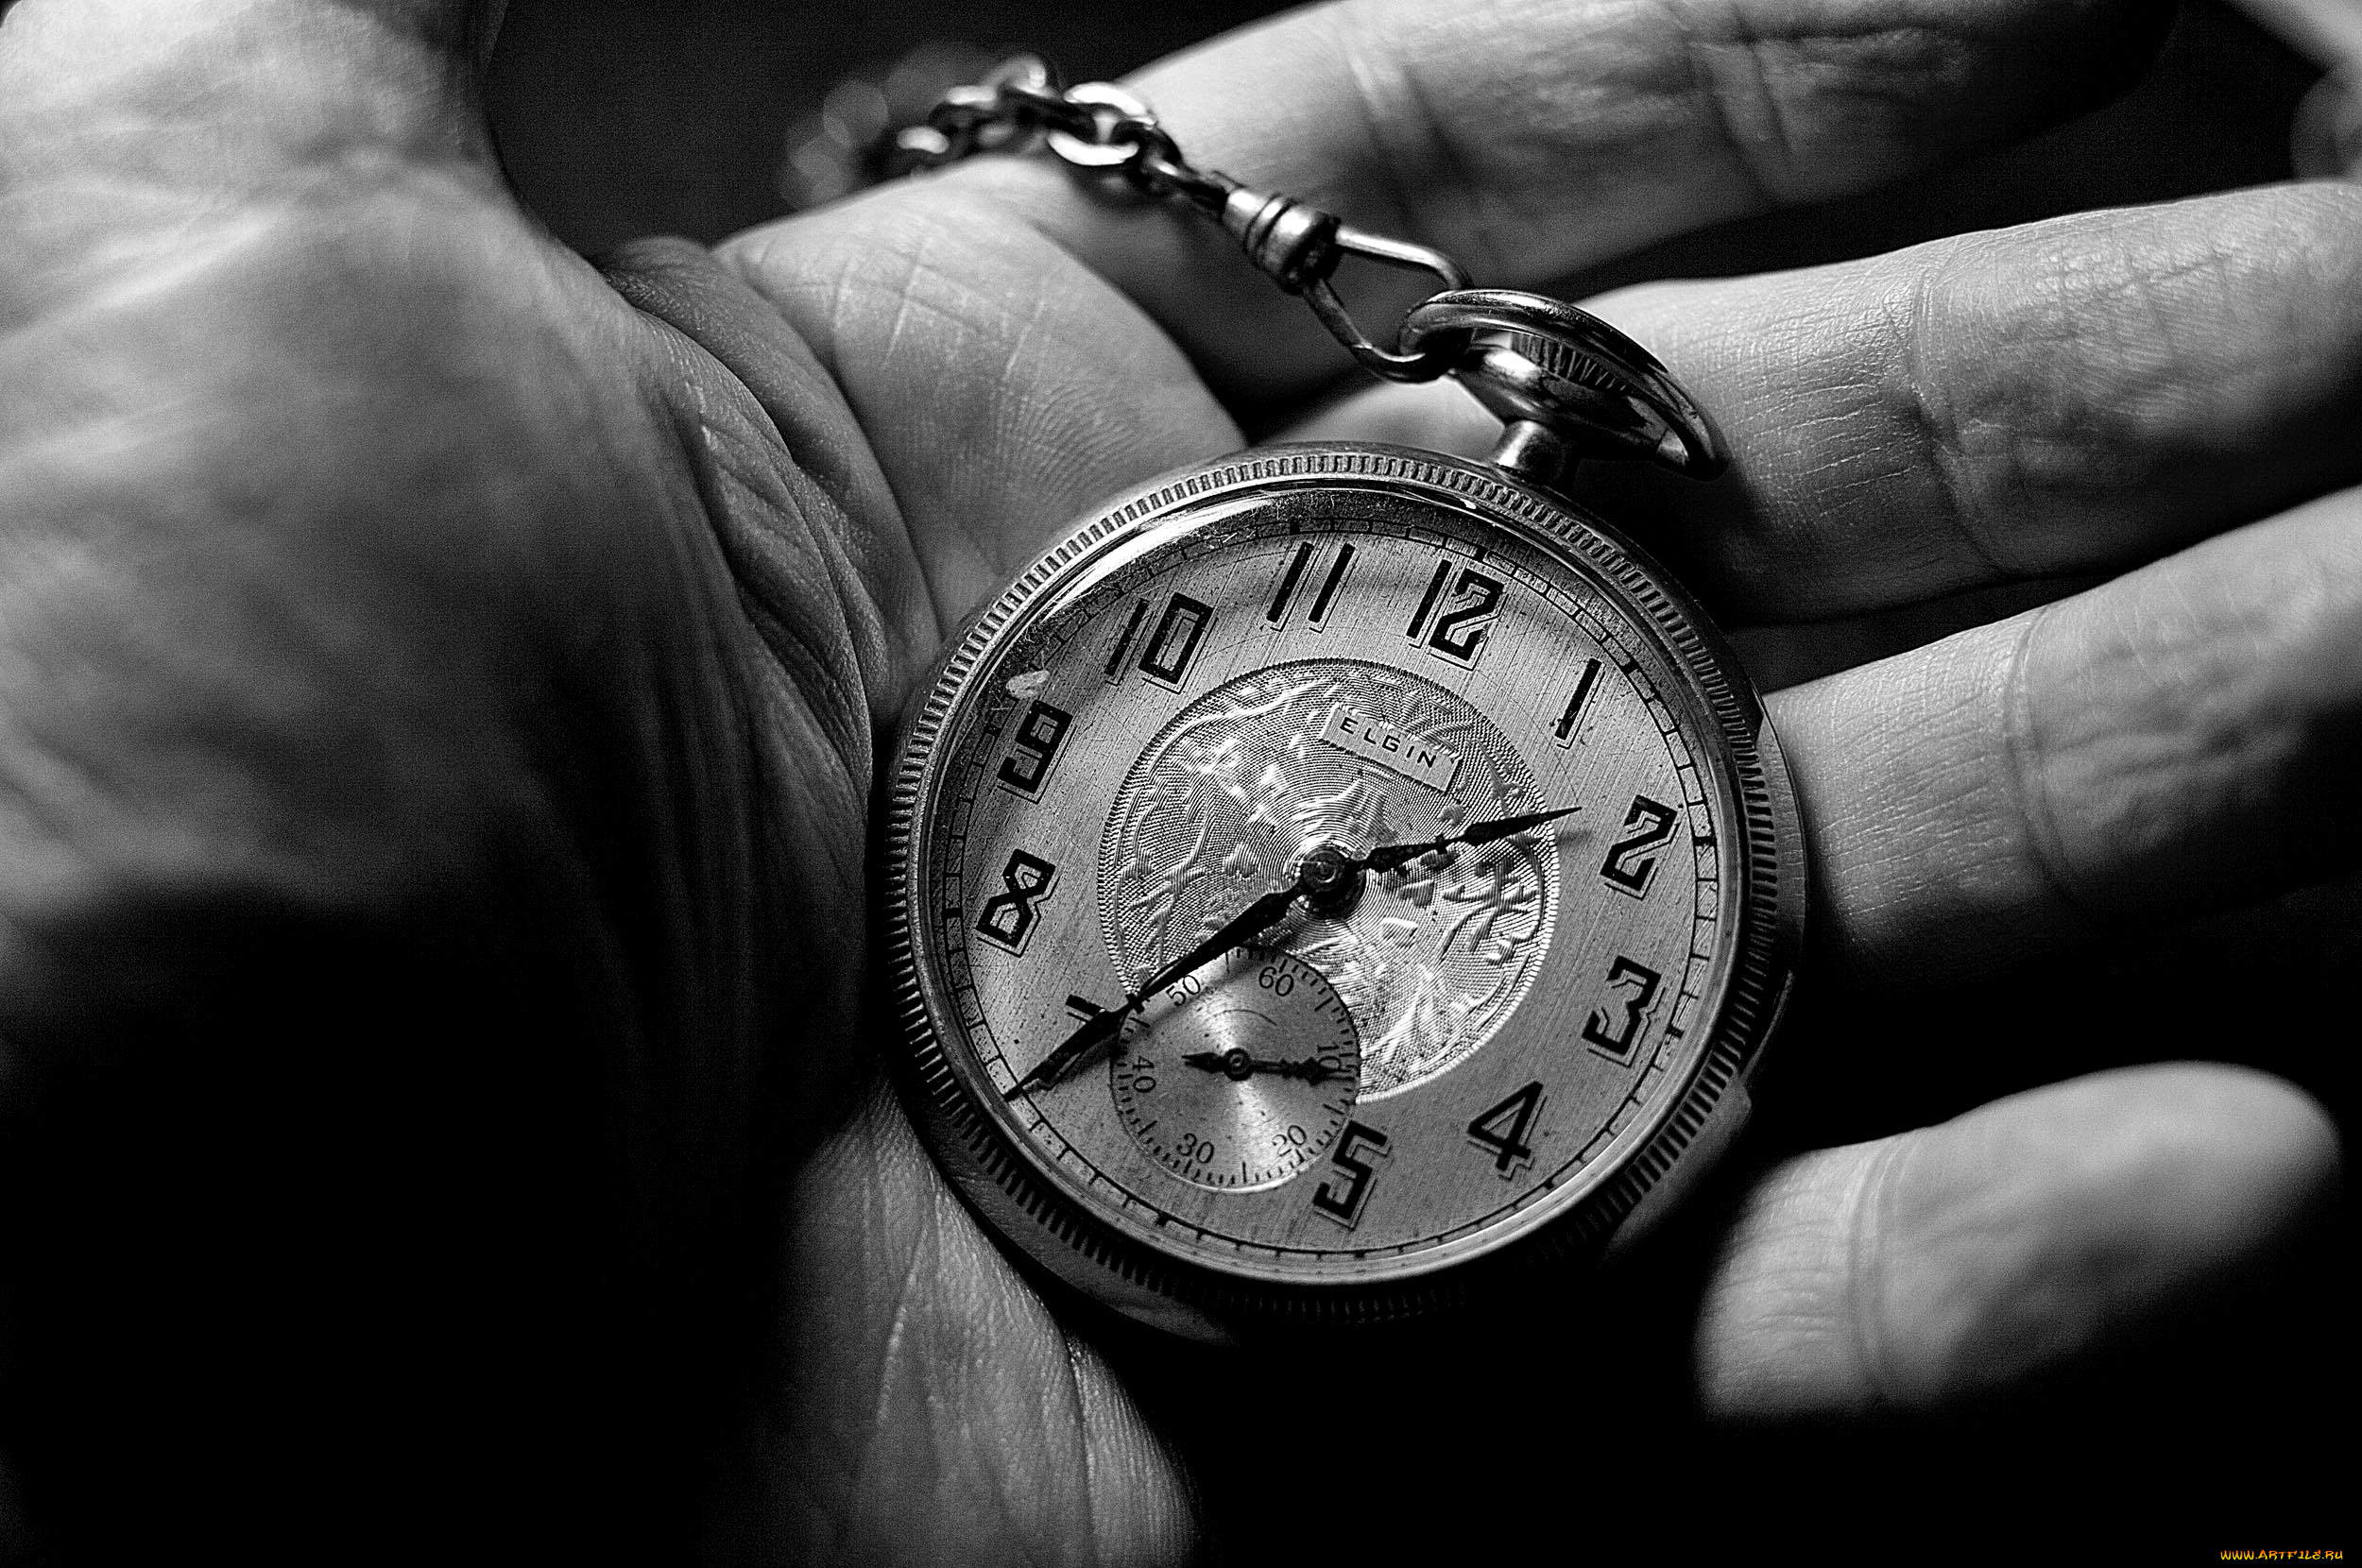 Антонов время уходит. Карманные часы в руке. Старые часы на руку. Красивые высказывания о времени. Часы на цепочке.